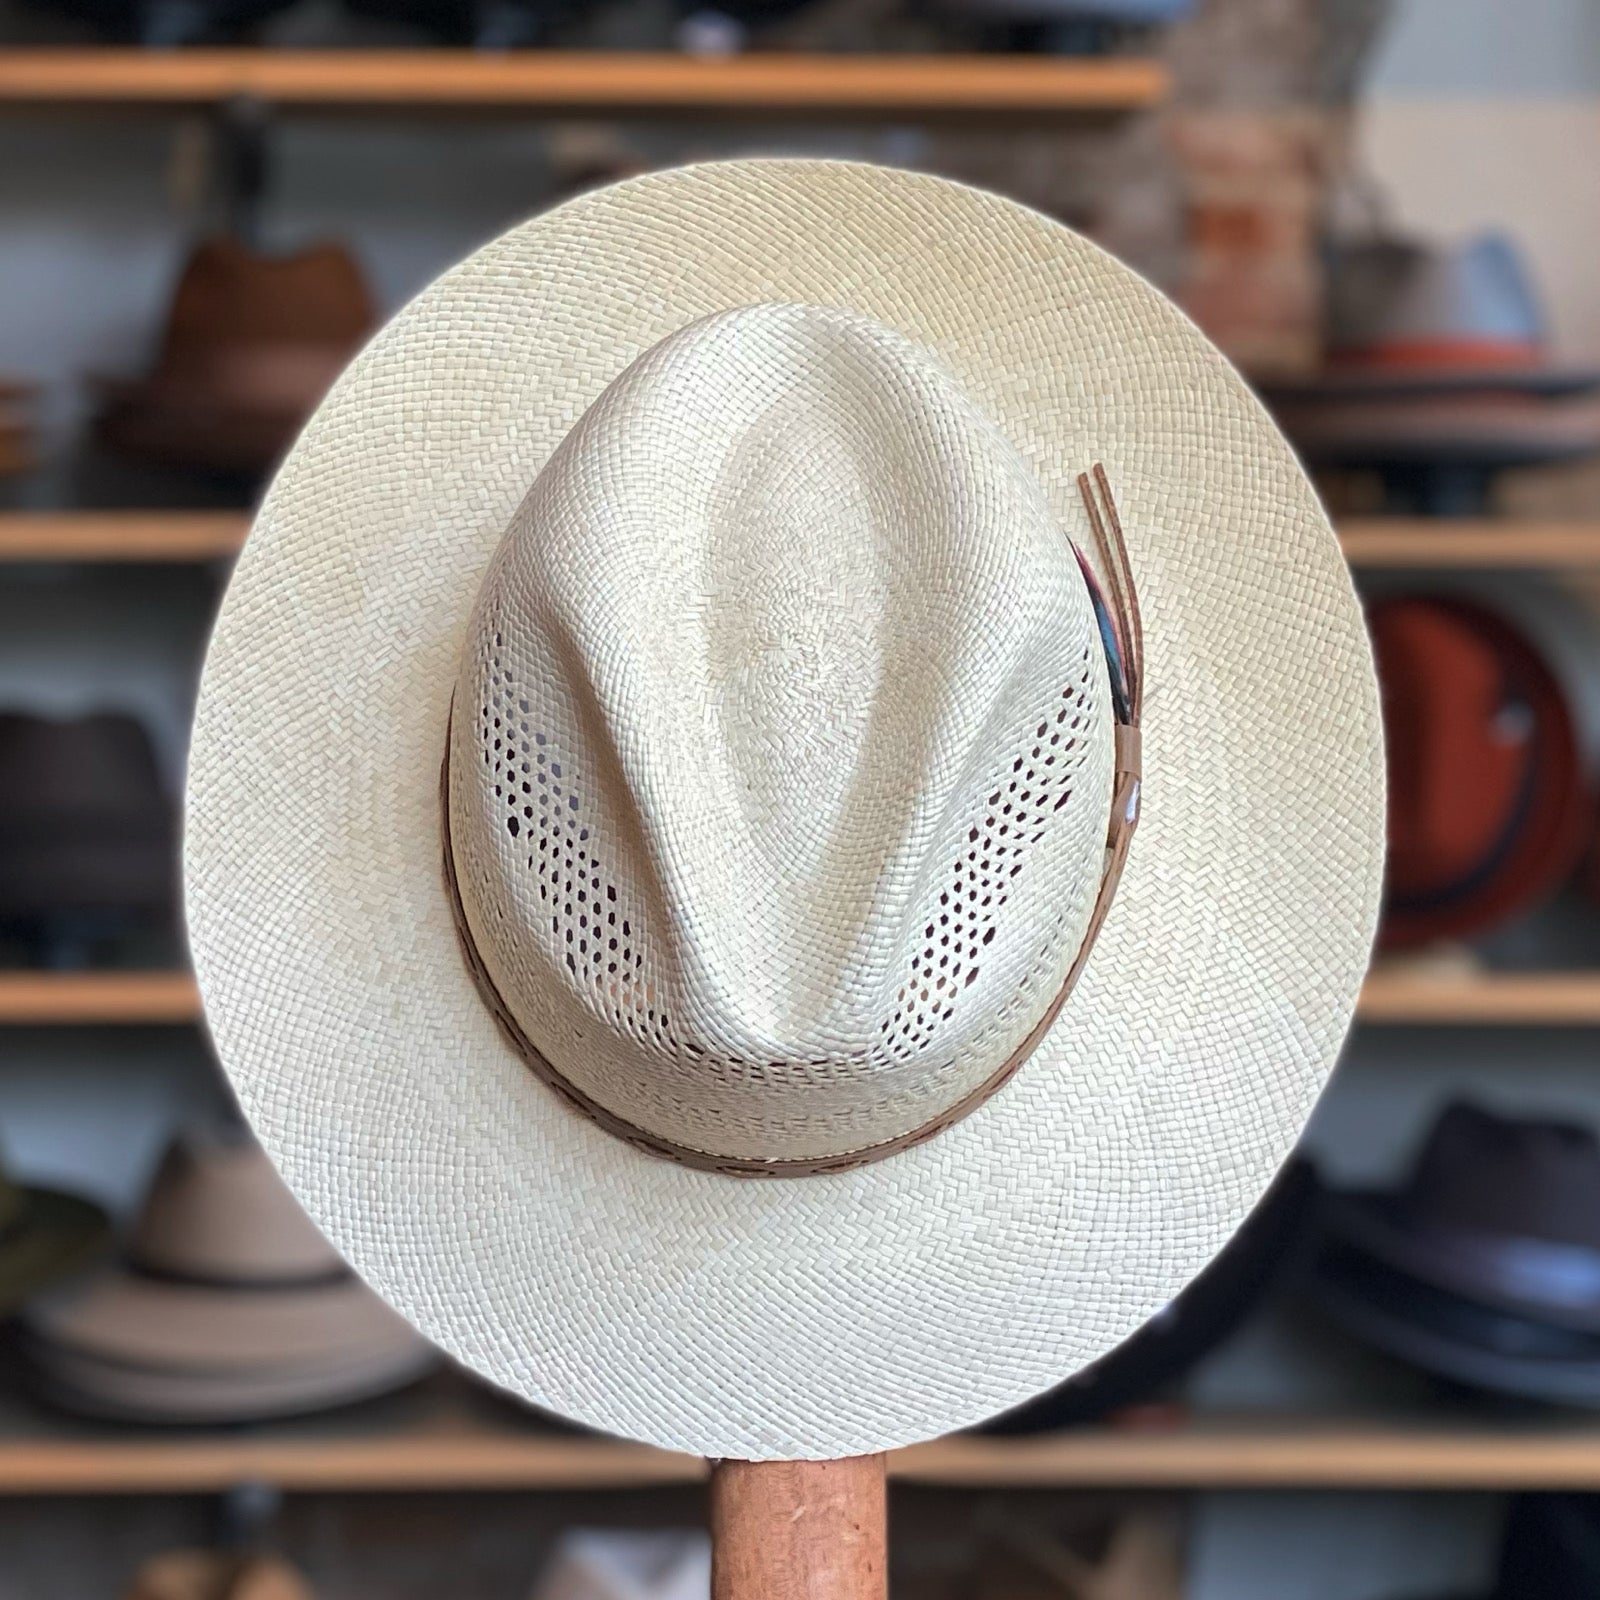 Helix Flat Brim Western Hat